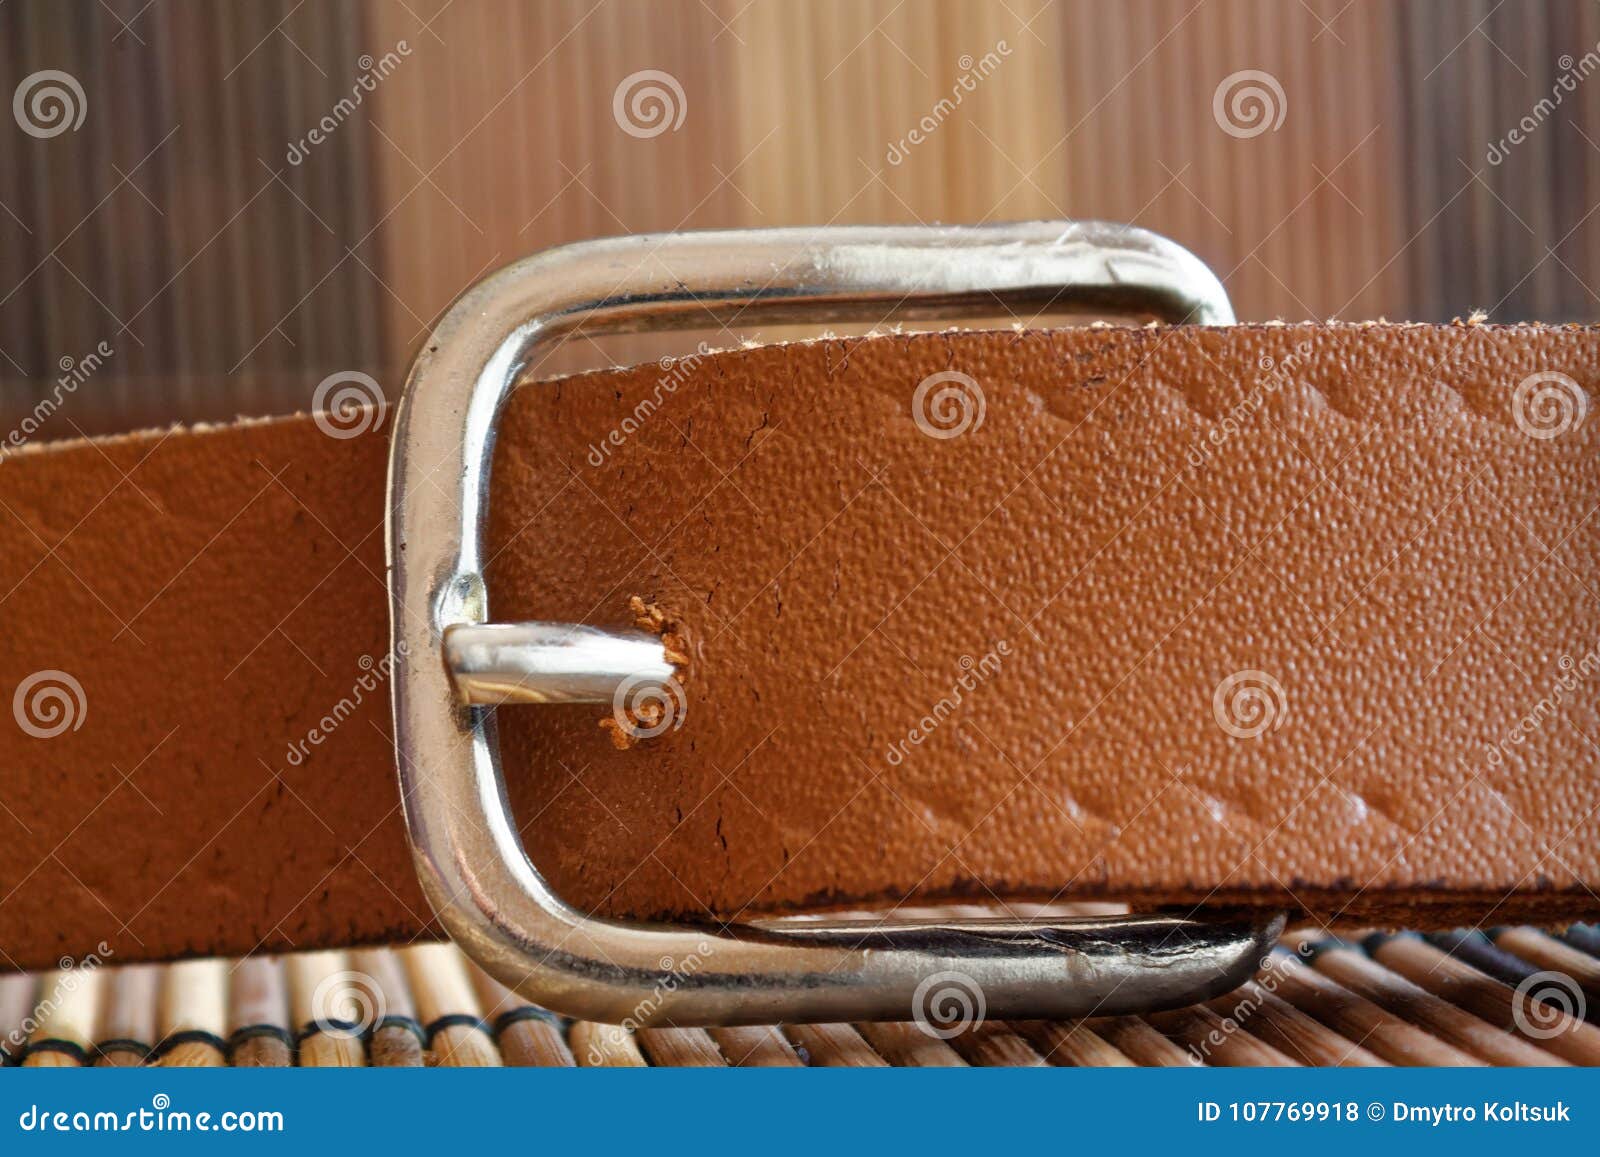 Stylish Leather Belt on Wooden Background Stock Photo - Image of luxury ...